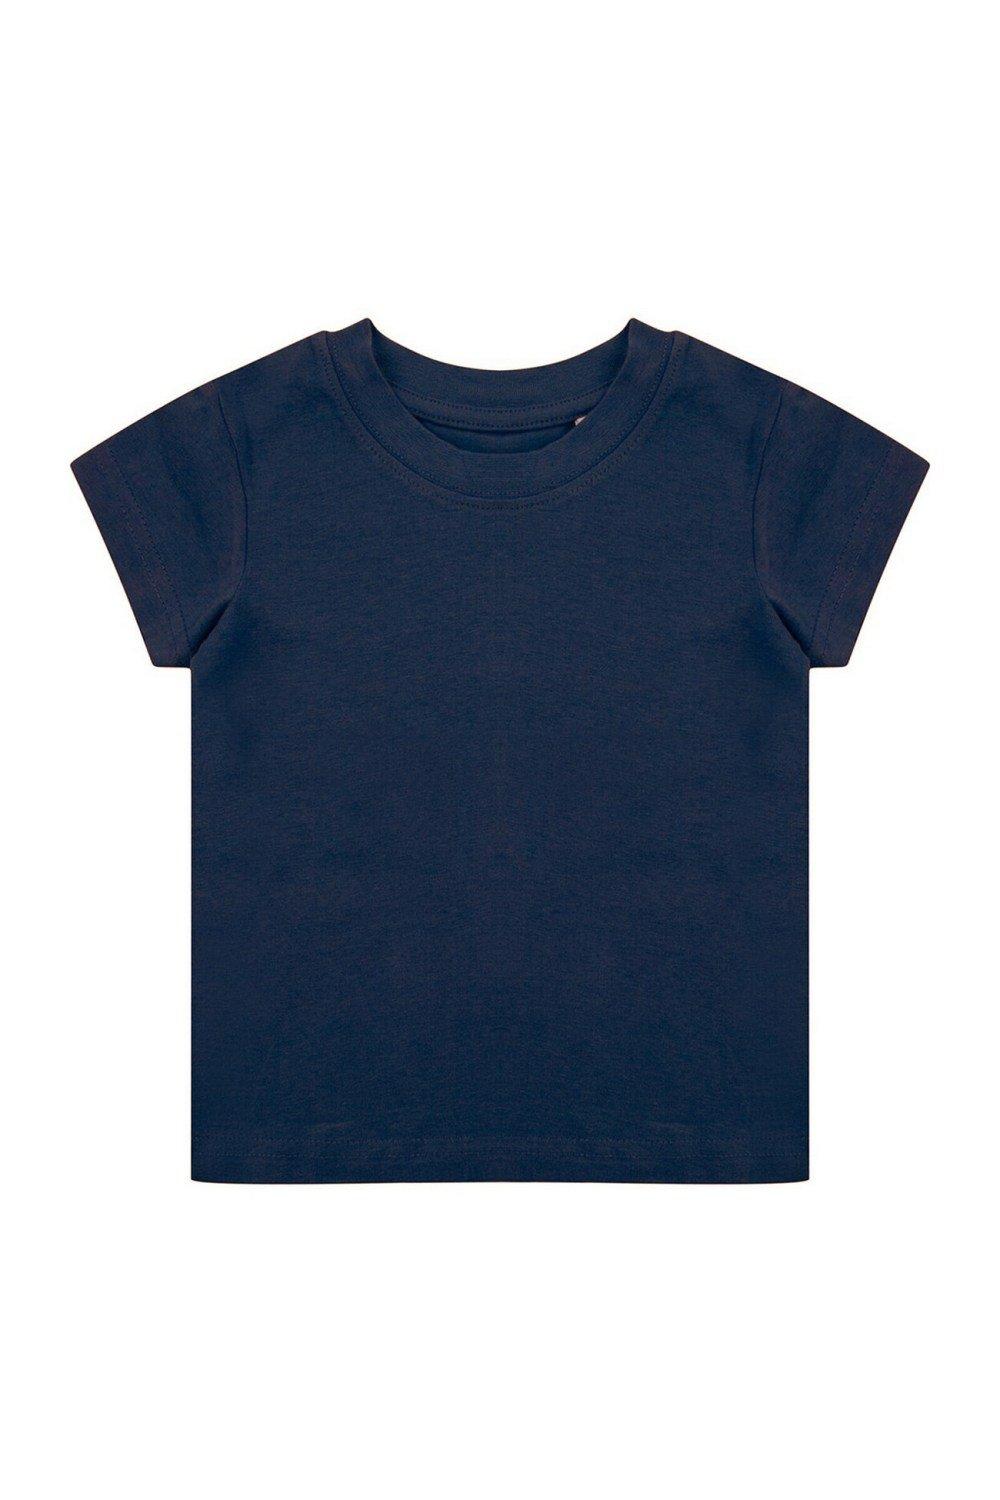 Органическая футболка Larkwood, темно-синий костюм размер 6 мес